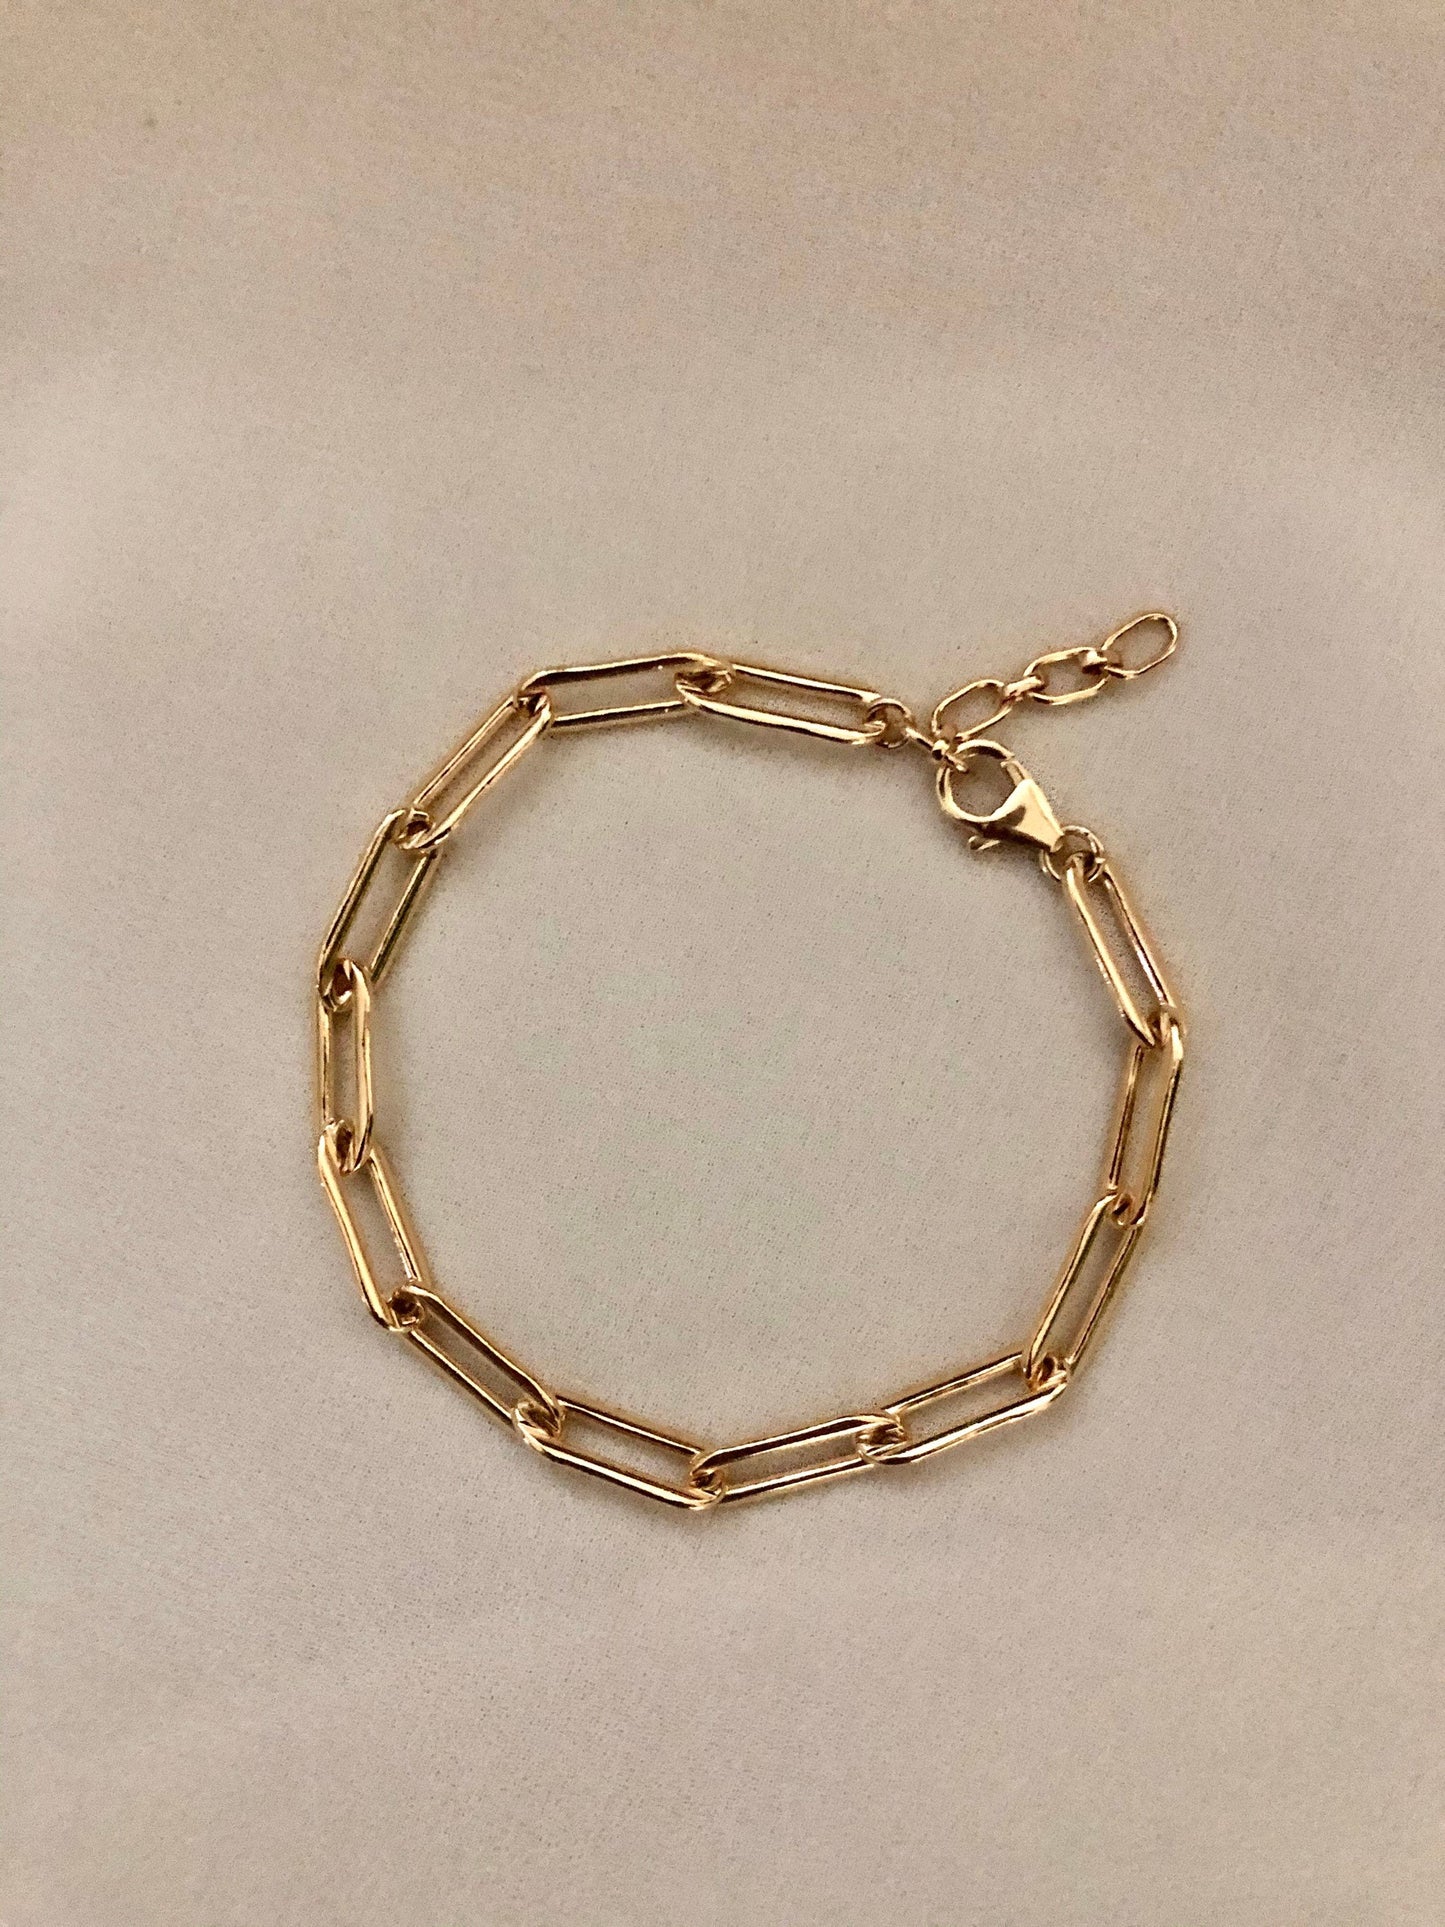 HARLOWE Paperclip Chain Bracelet